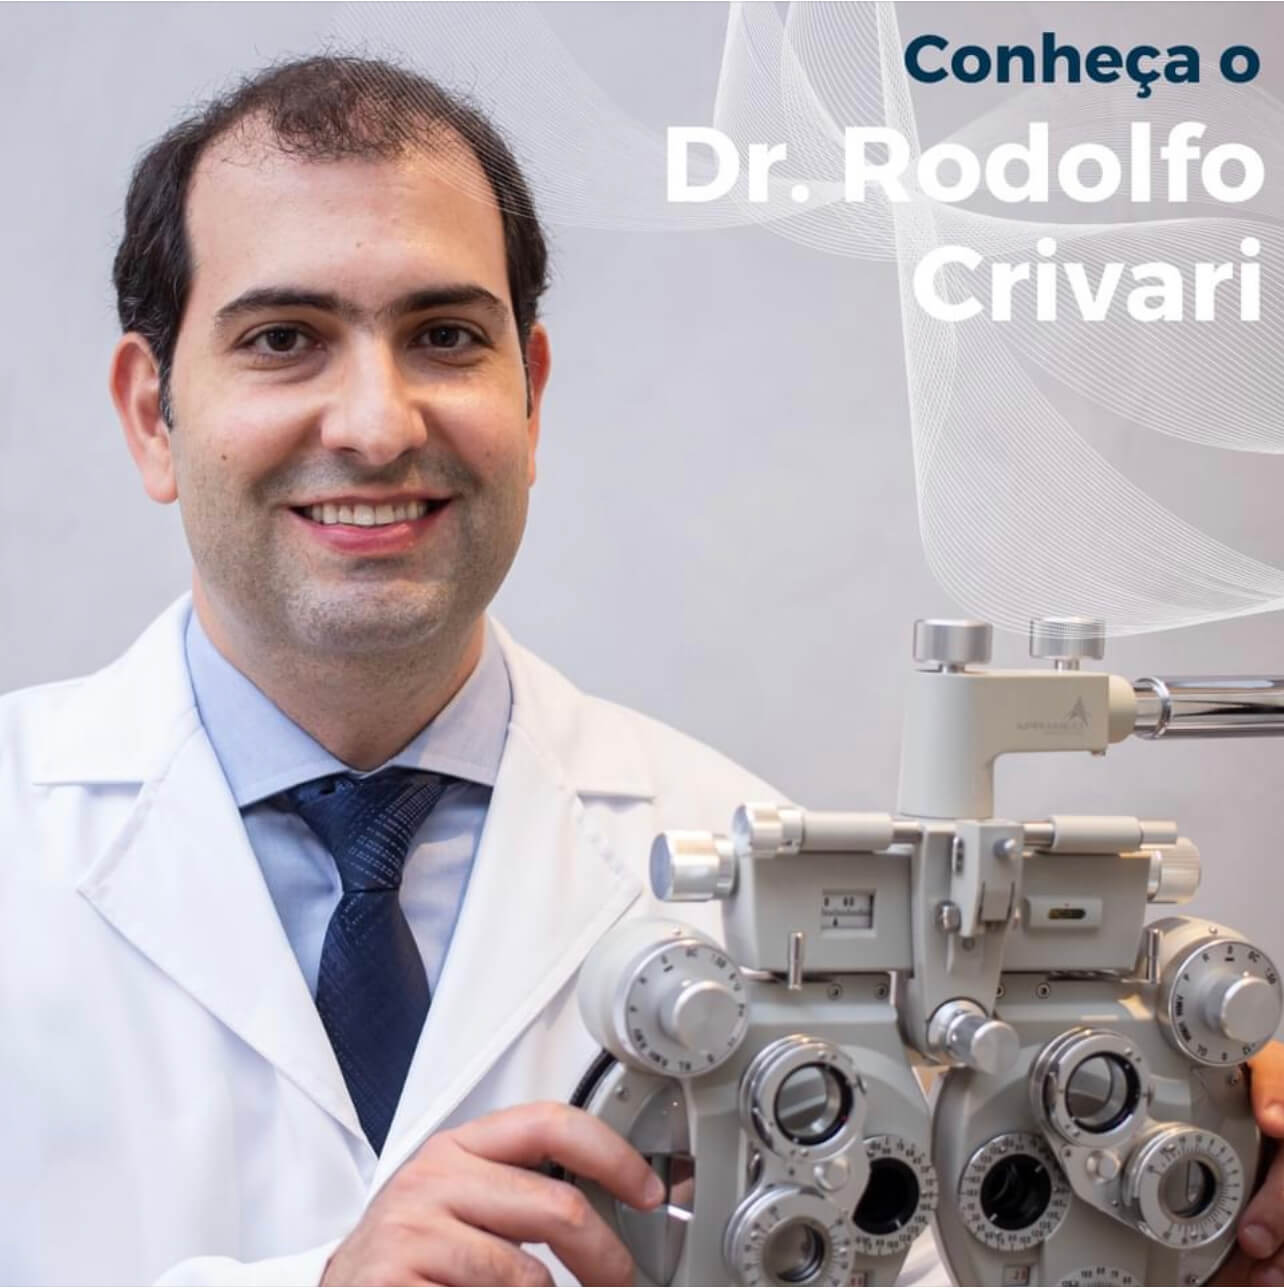 Dr Rodolfo Crivari